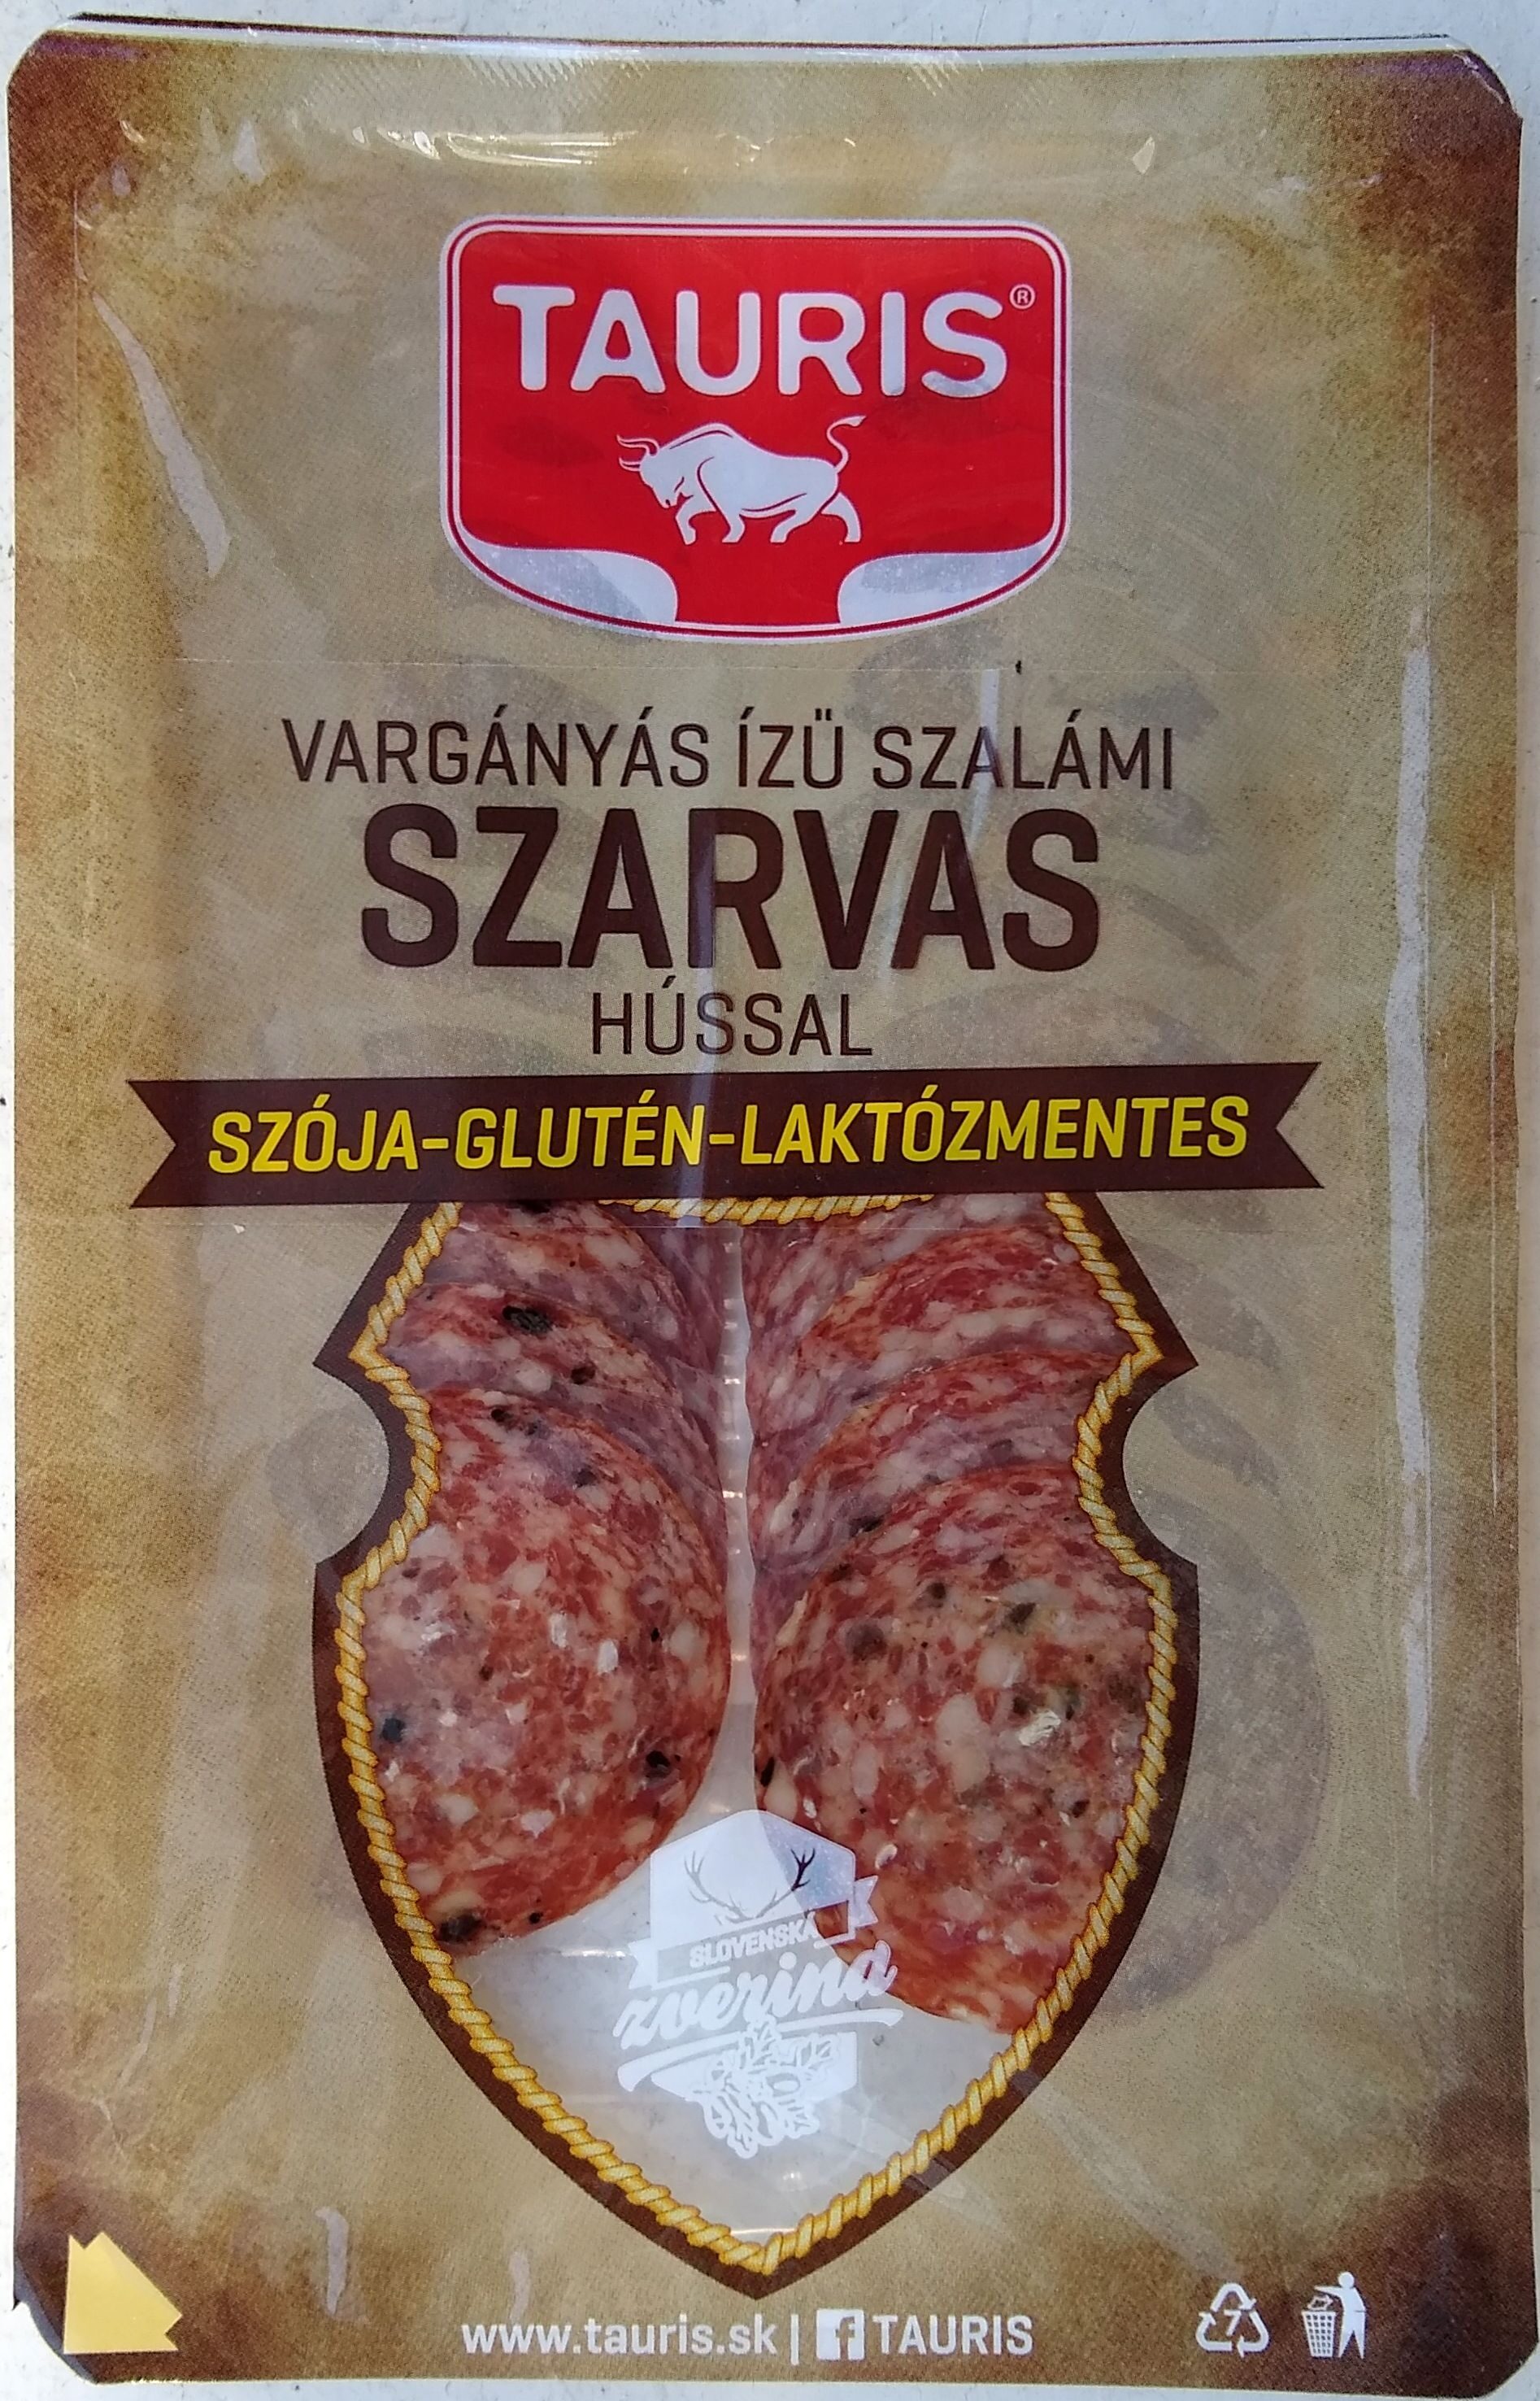 Vargányás ízű szalámi szarvas hússal - Product - hu